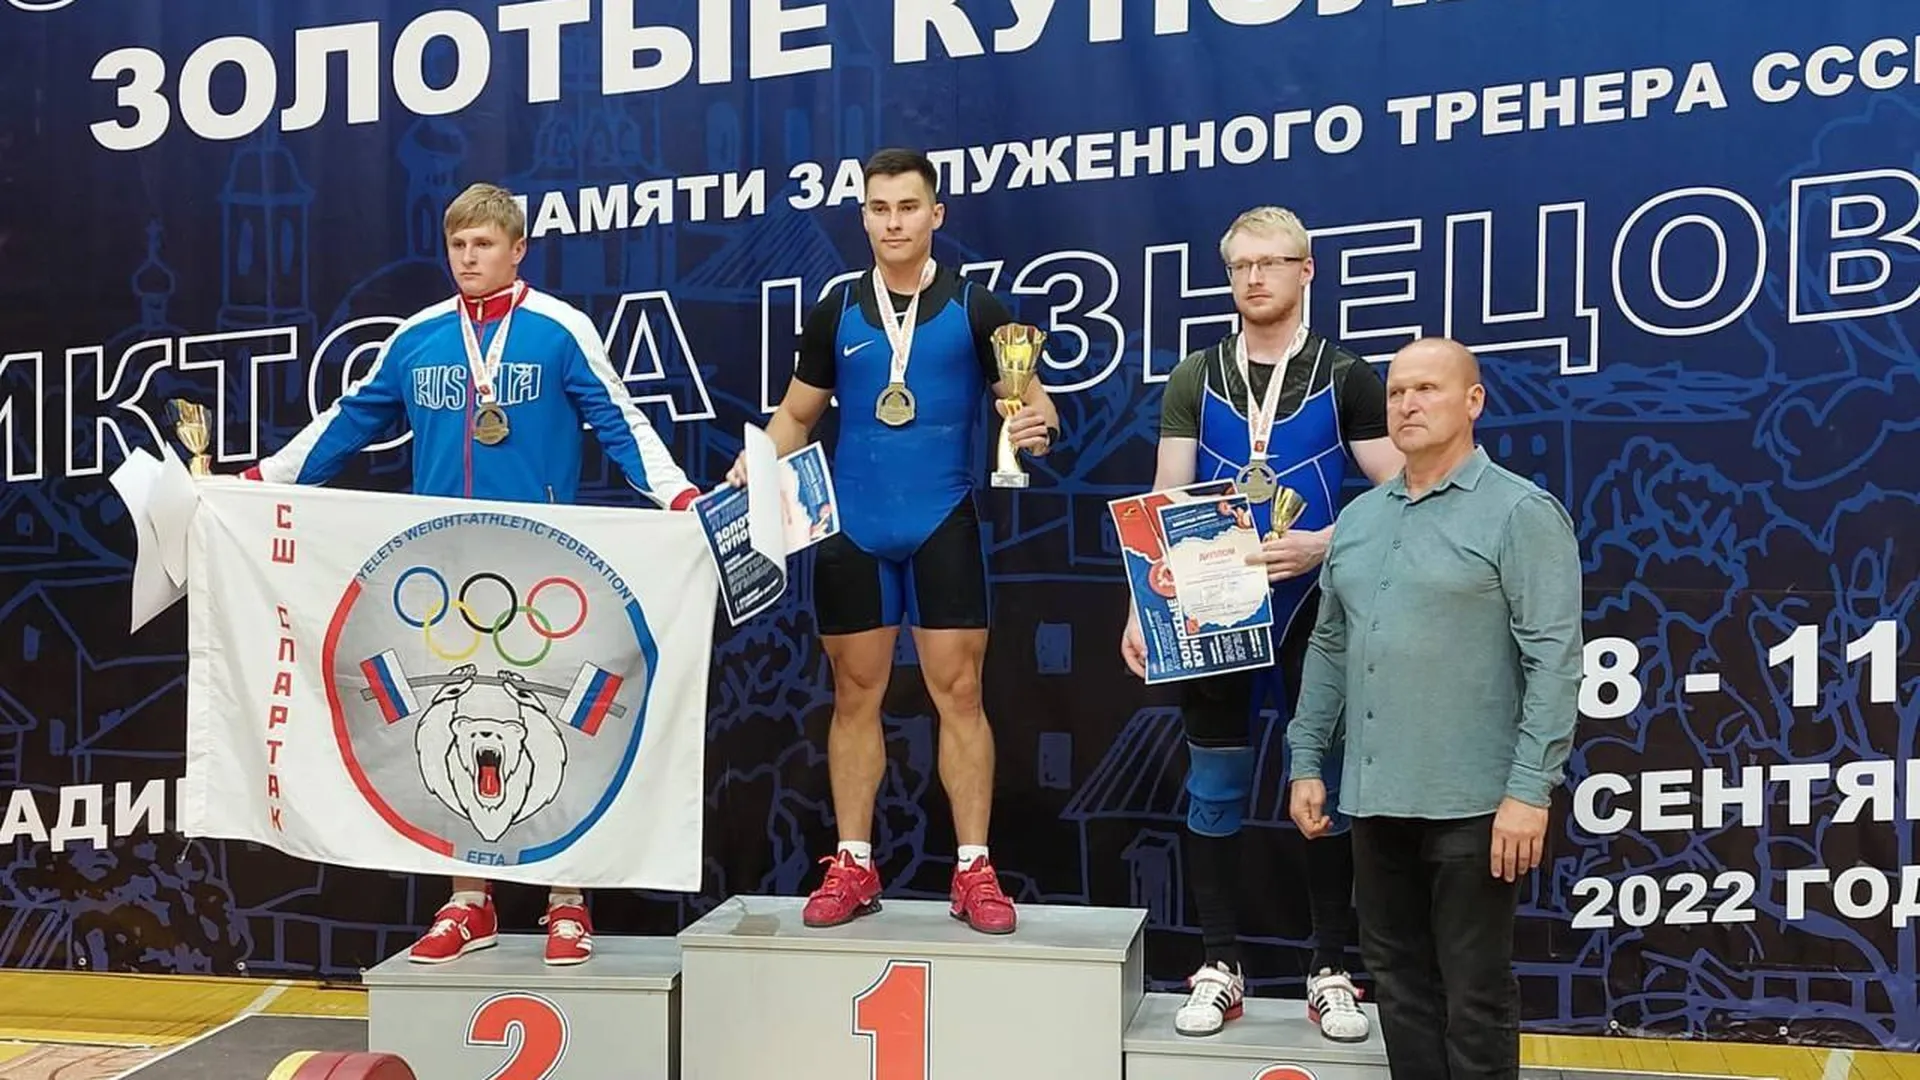 Тяжелоатлет из Подольска занял 1 место на всероссийском турнире